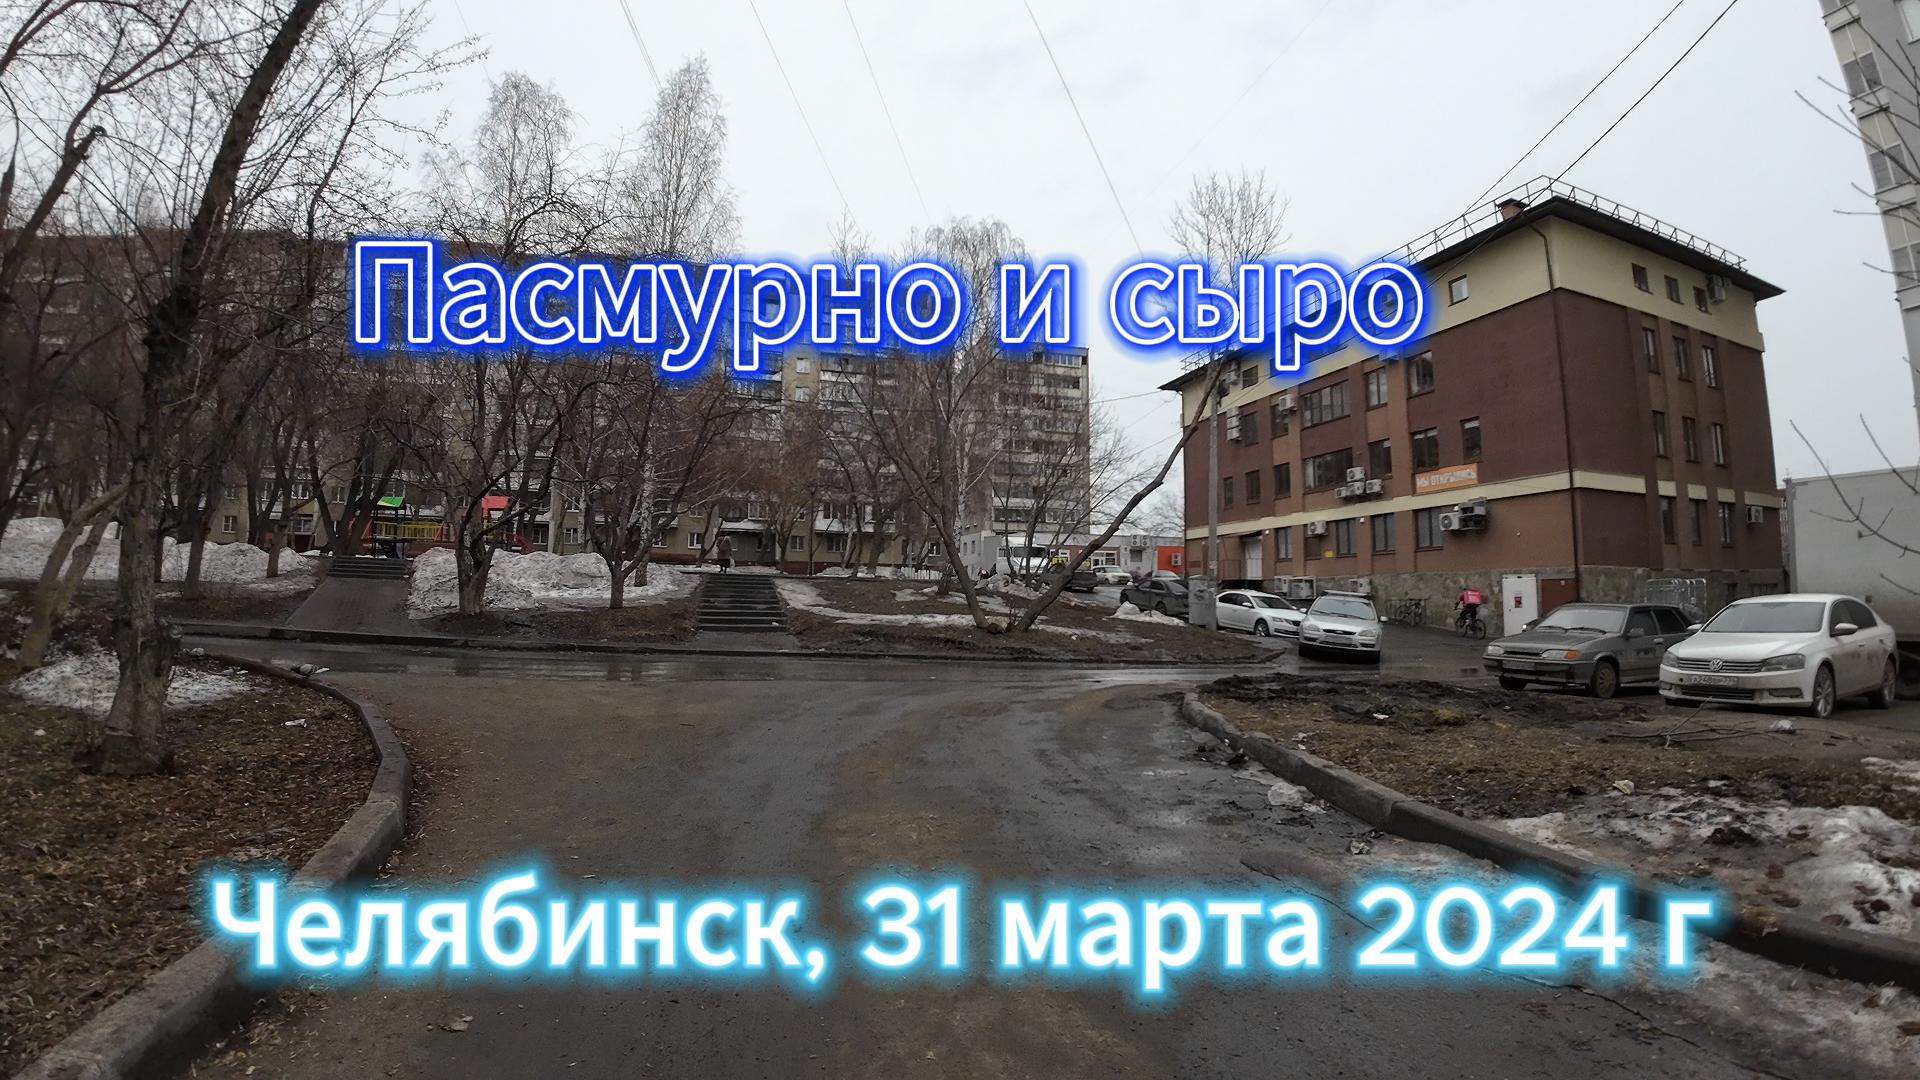 Снег сменился дождем в Челябинске 31 марта 2024 г